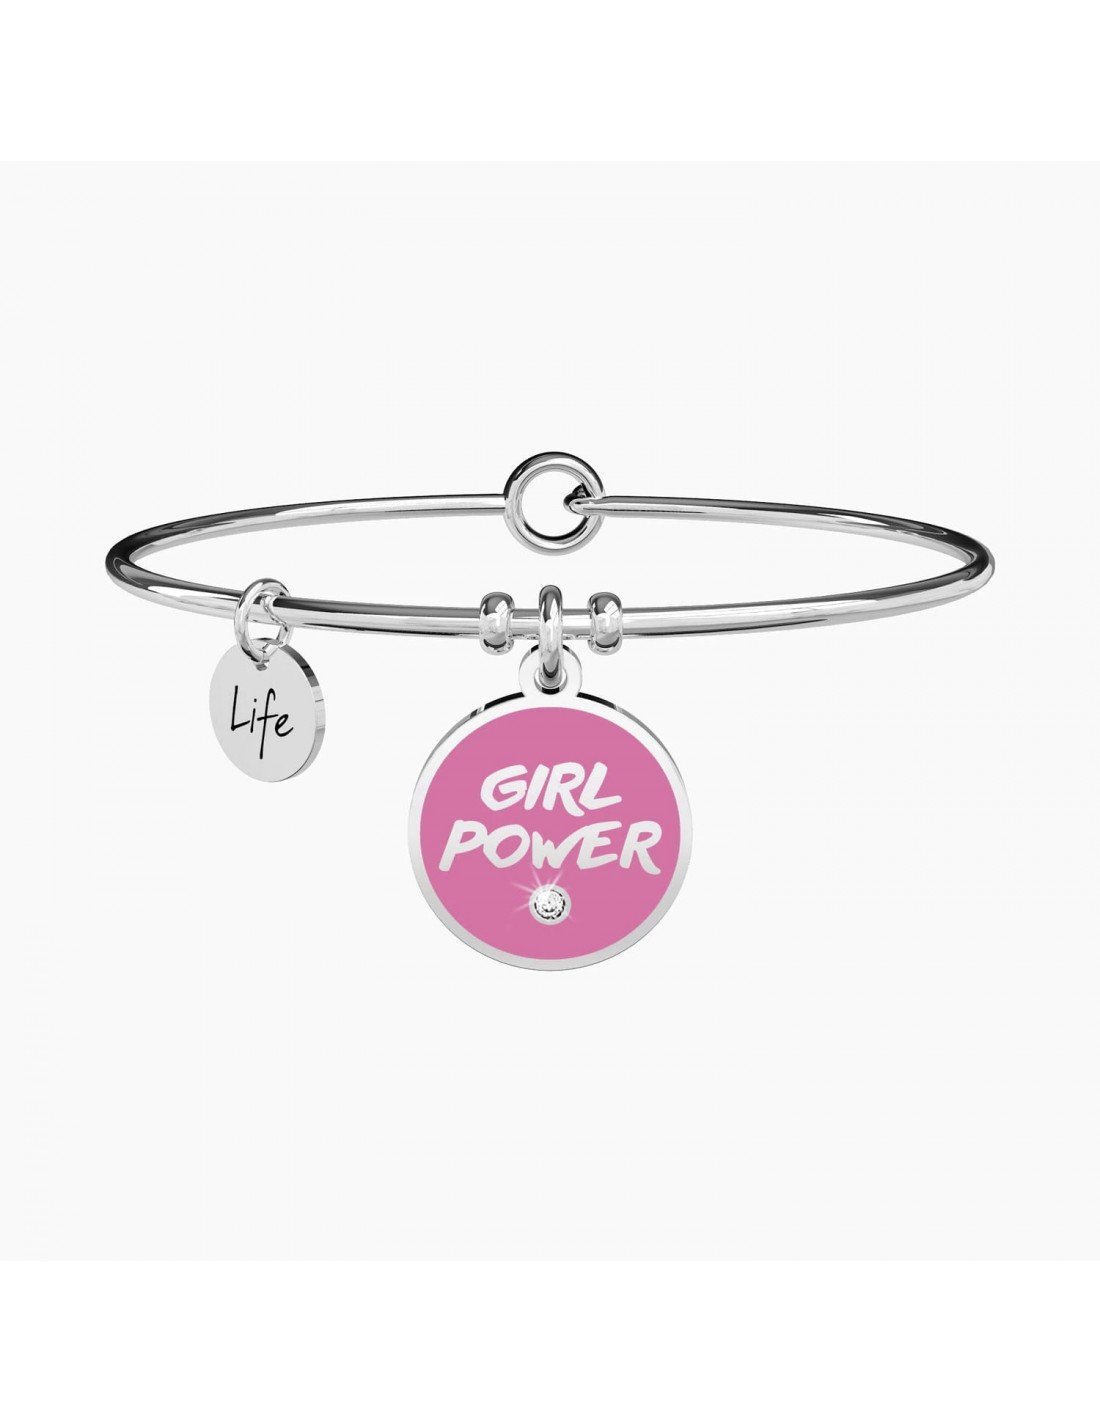 GIRL POWER - Simmi gioiellerie -Bracciale